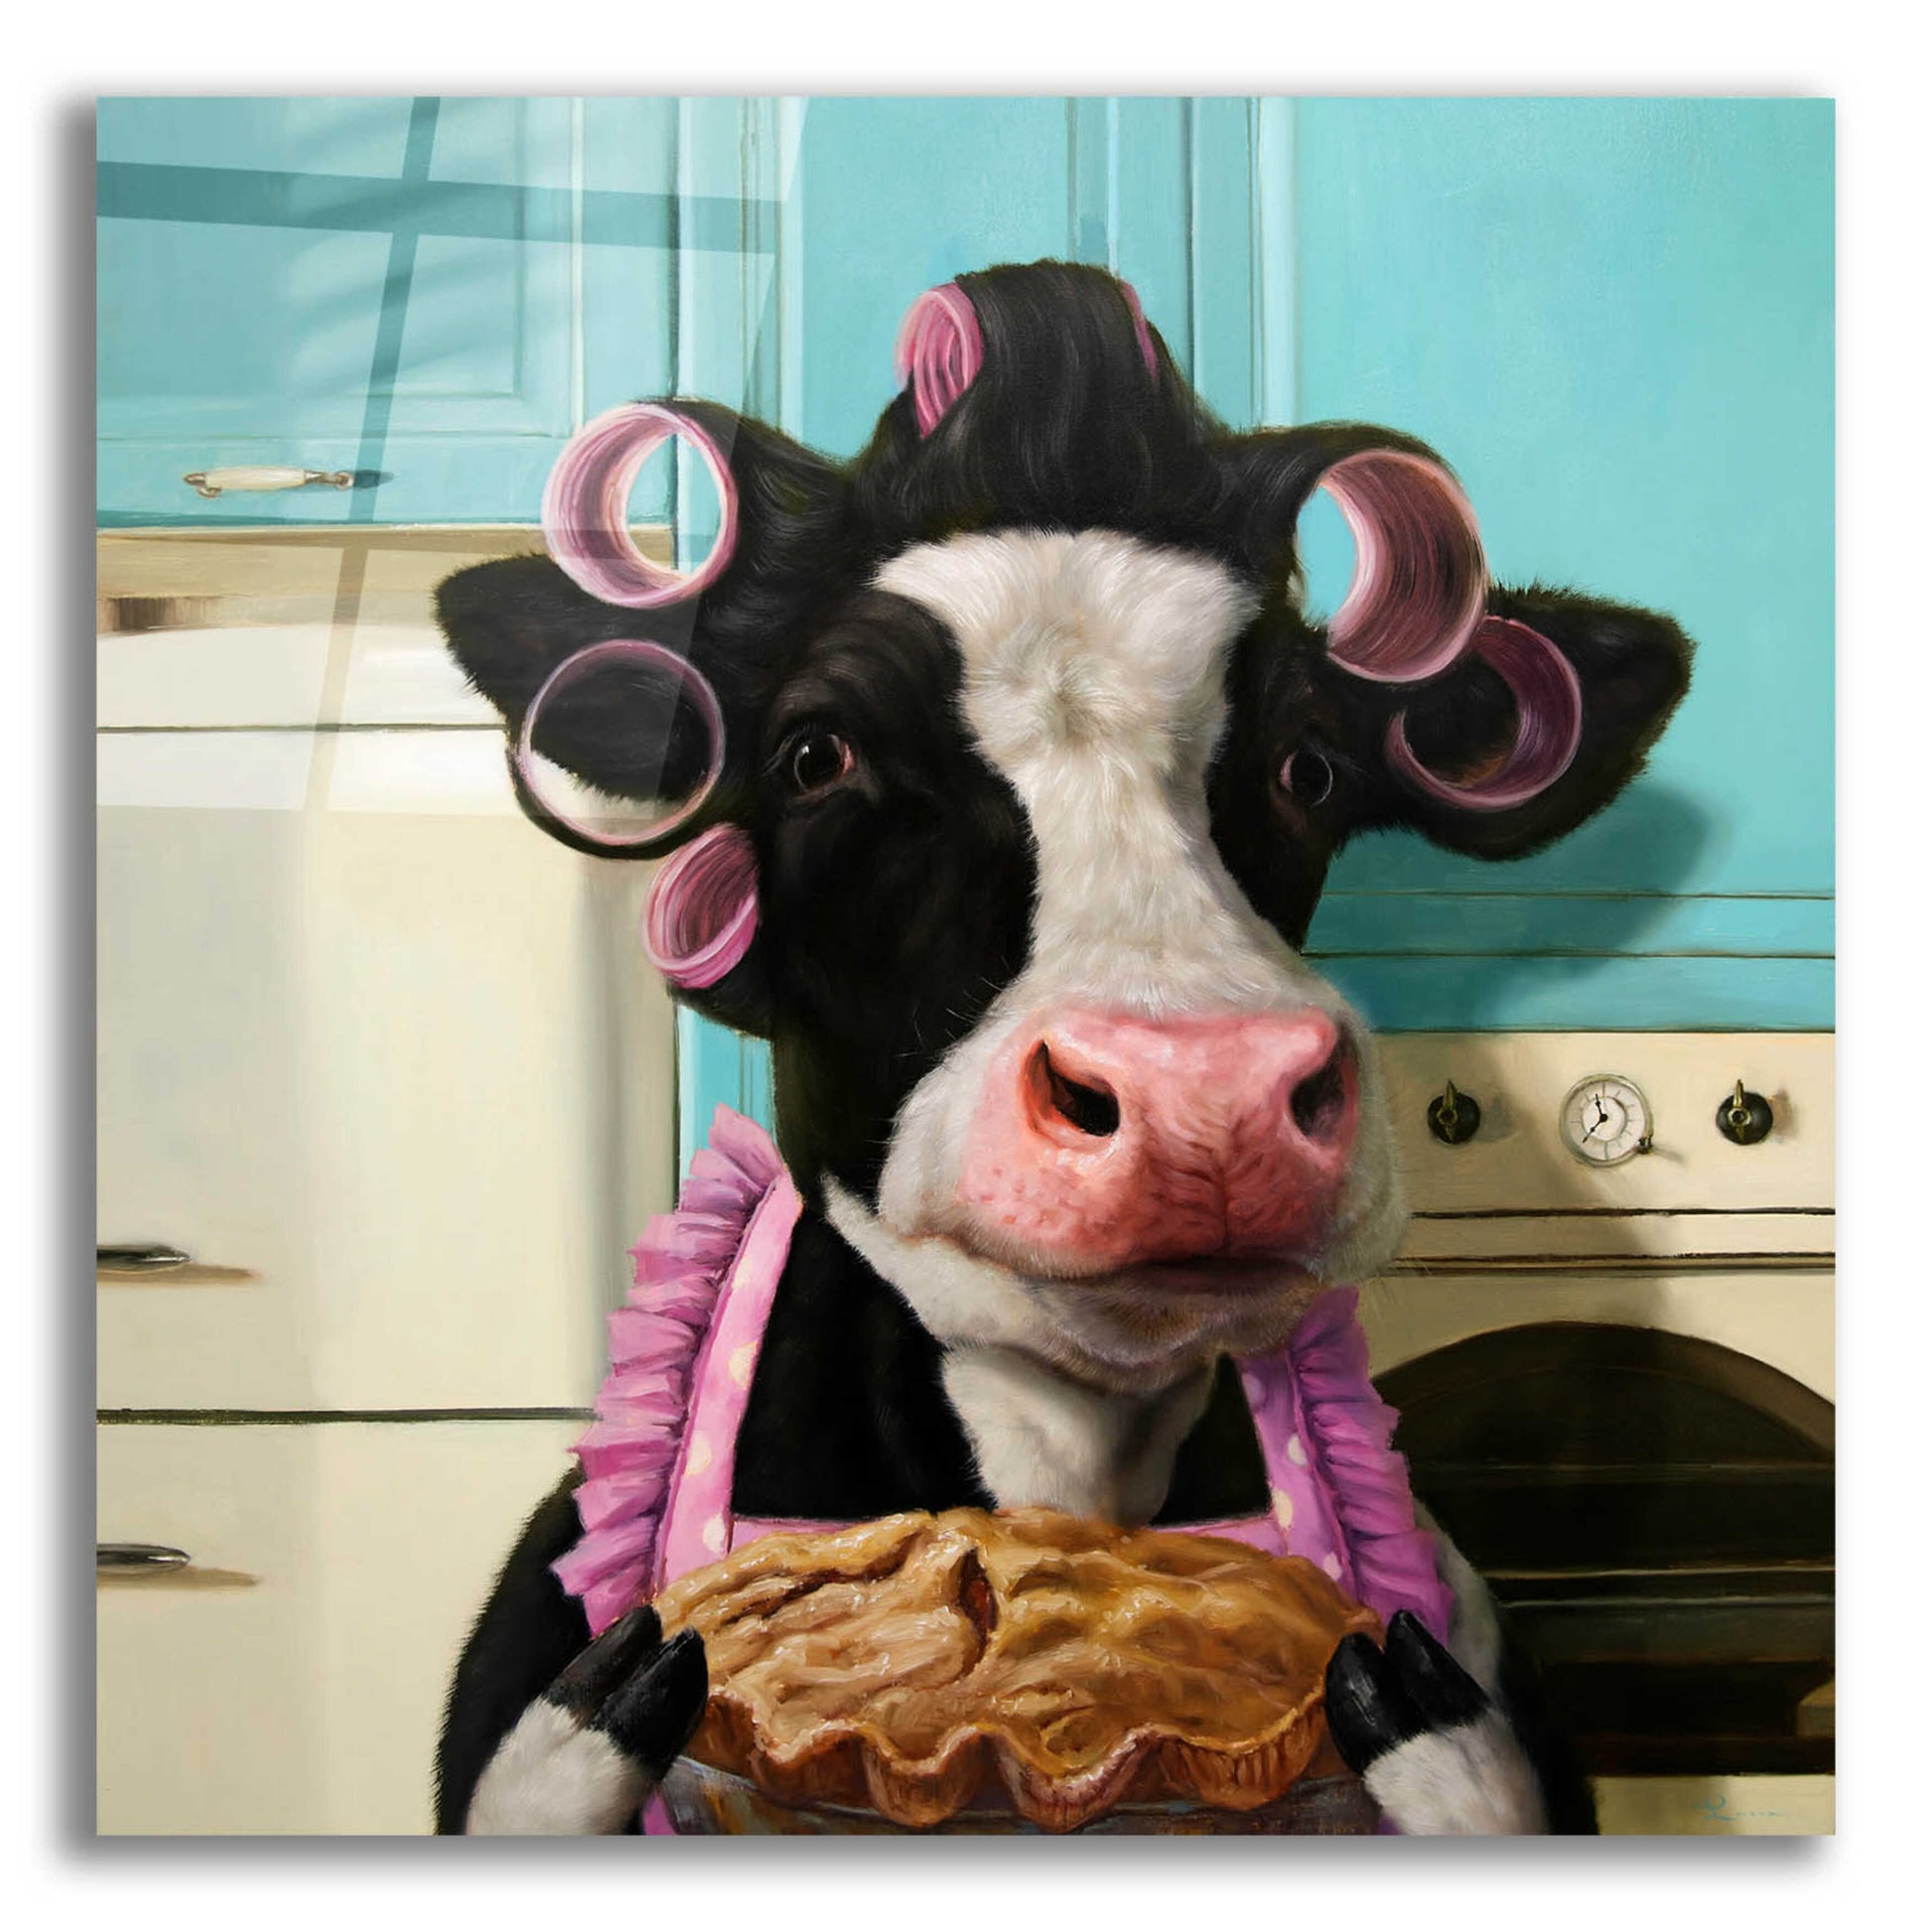 Epic Art 'Cow Pie' by Lucia Heffernan,12x12